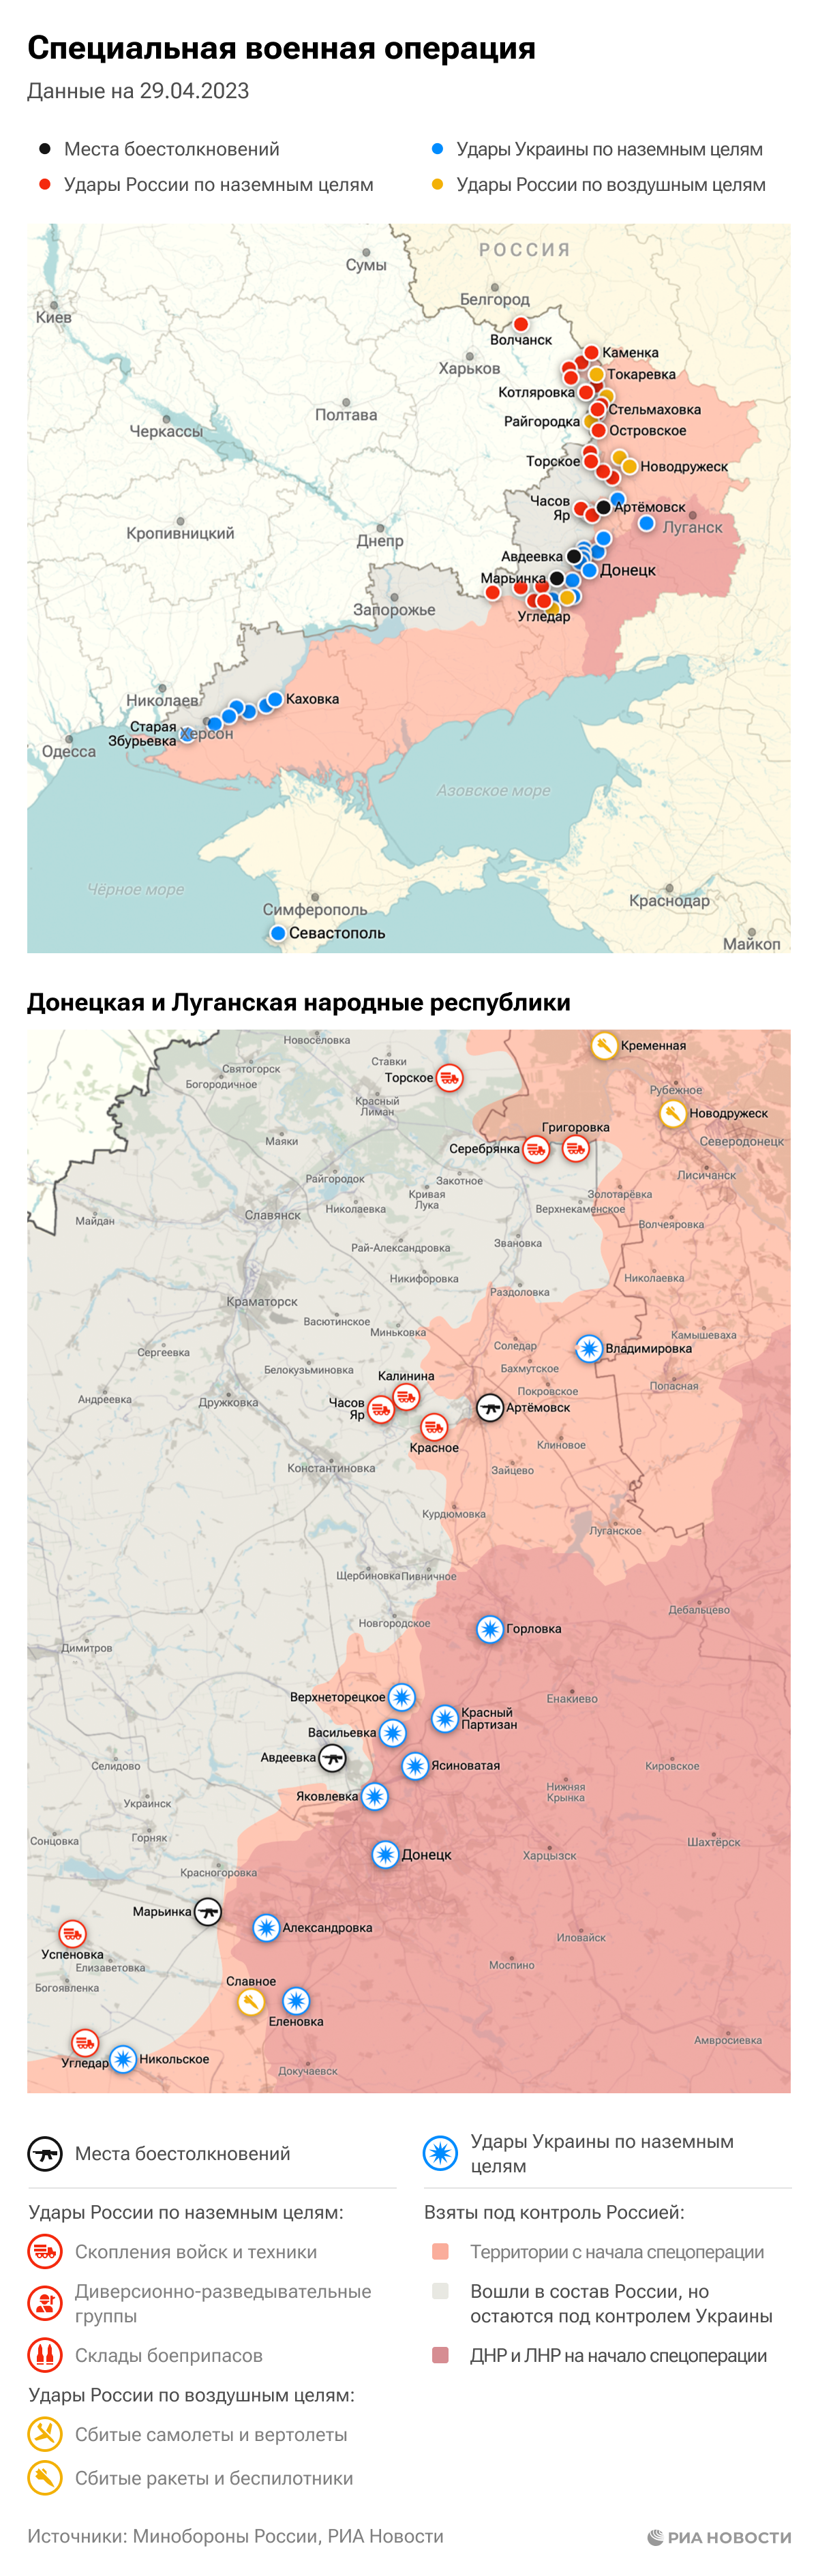 Карта спецоперации Вооруженных сил России на Украине на 29.04.2023